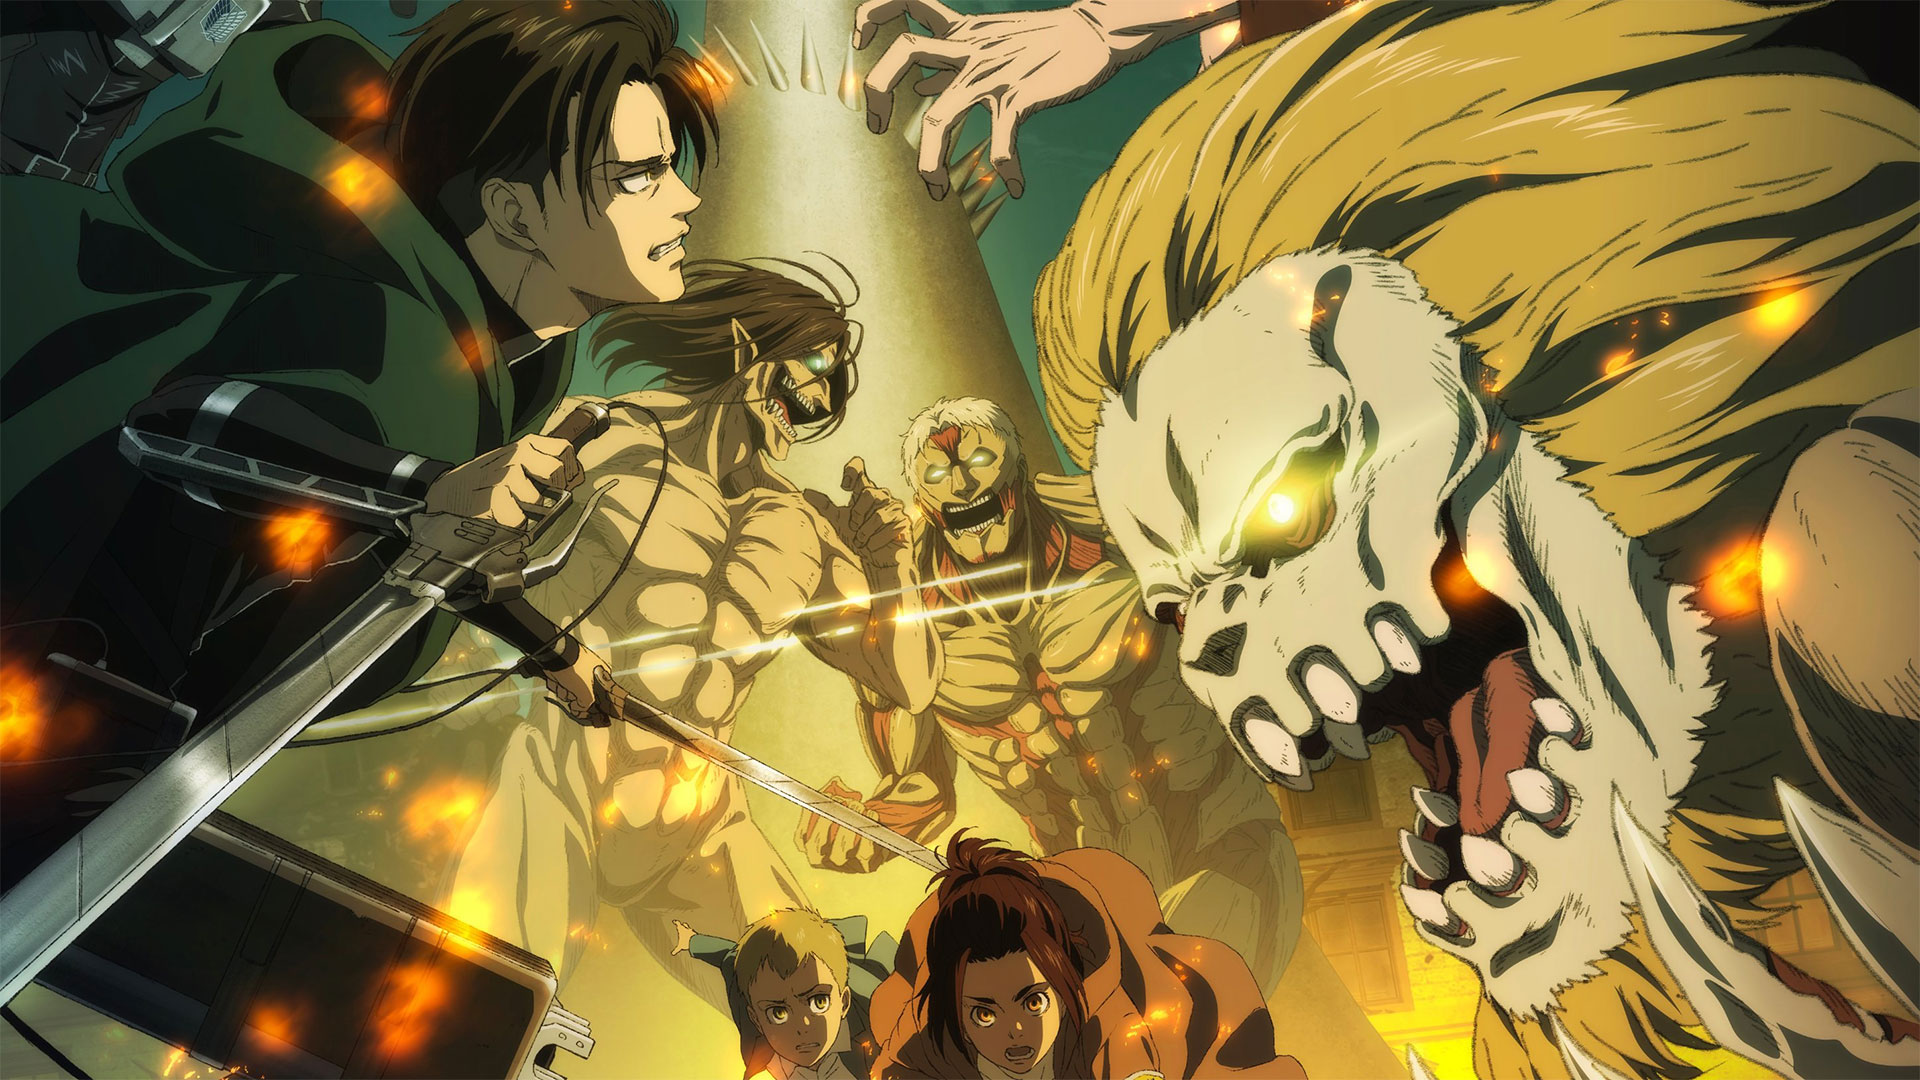 ESPECIAL: Tudo que você precisa saber sobre Attack on Titan antes da  estreia da última temporada - Crunchyroll Notícias